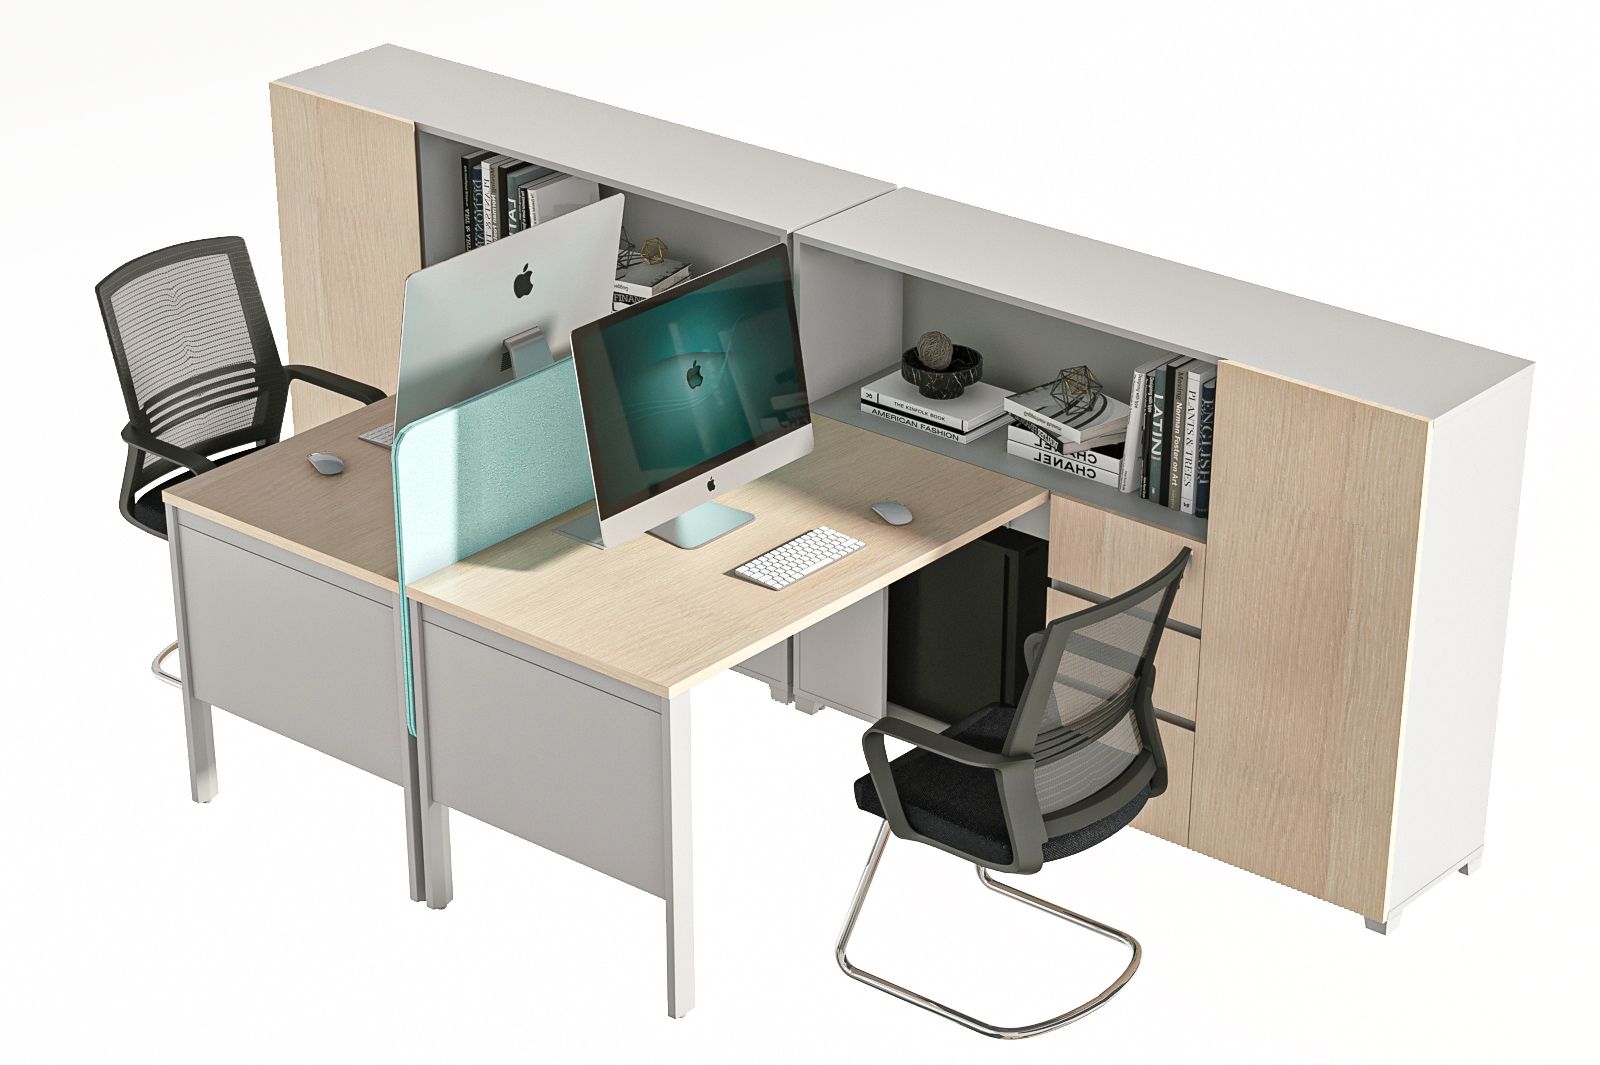 现代办公桌 员工位 职员桌 工位 桌上屏 桌屏 屏风 条桌 隔断 办公椅 弓形椅 弓架椅